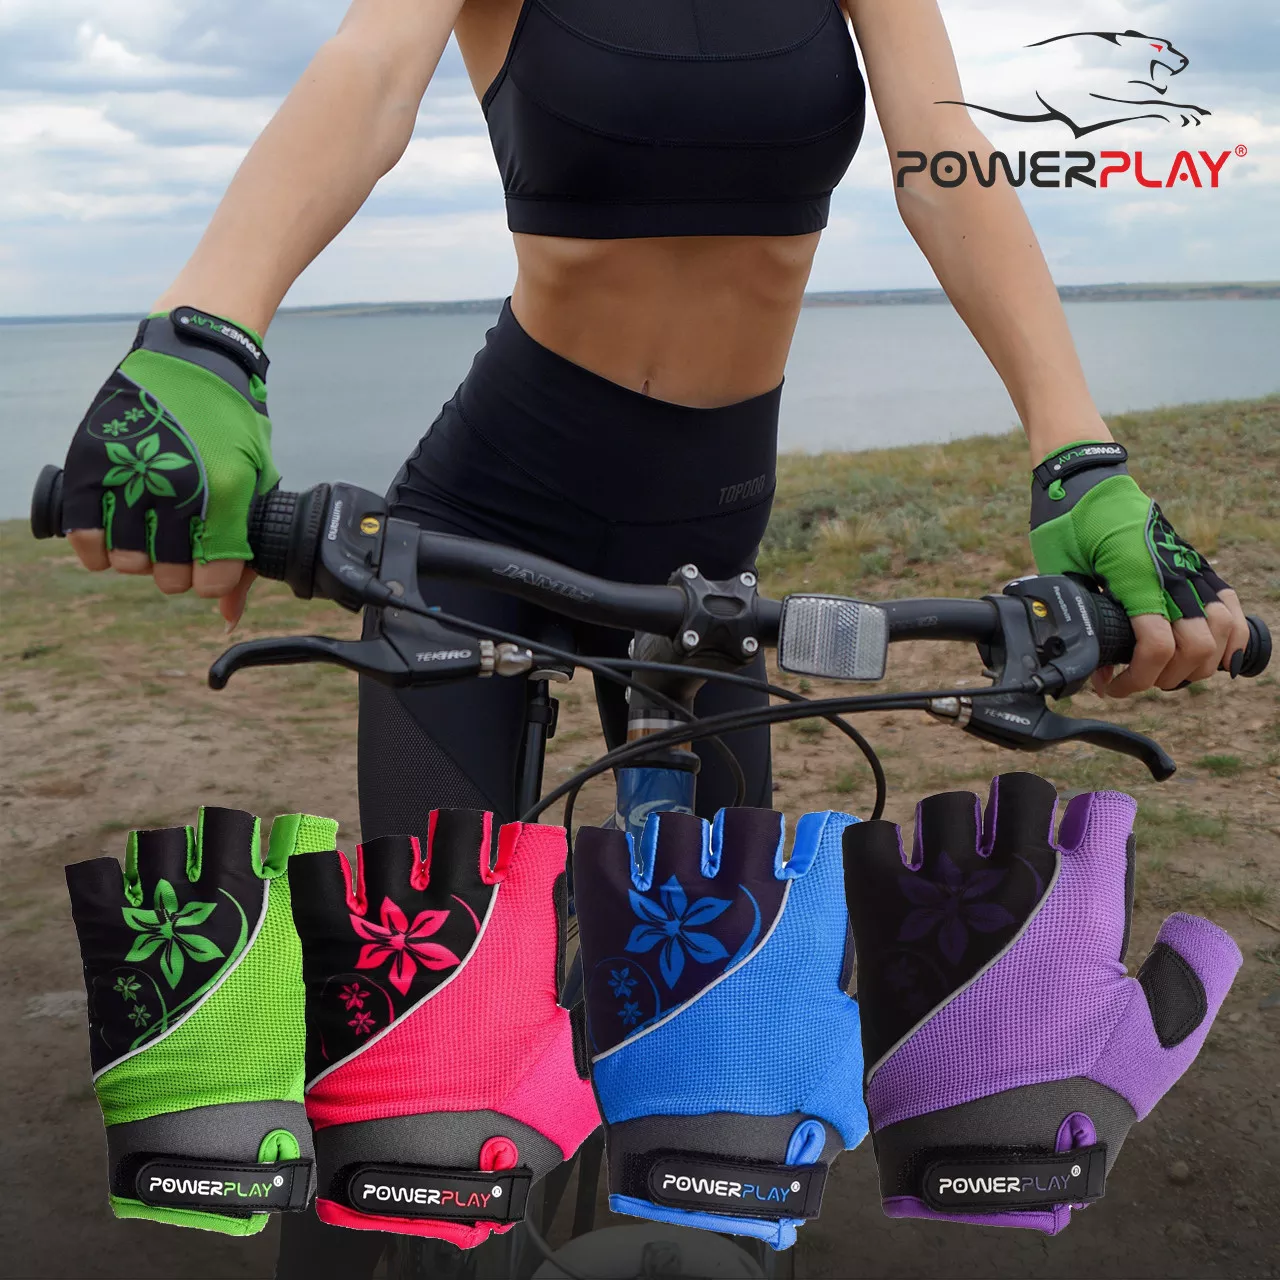 Велоперчатки женские PowerPlay 5281 D Фиолетовые XS